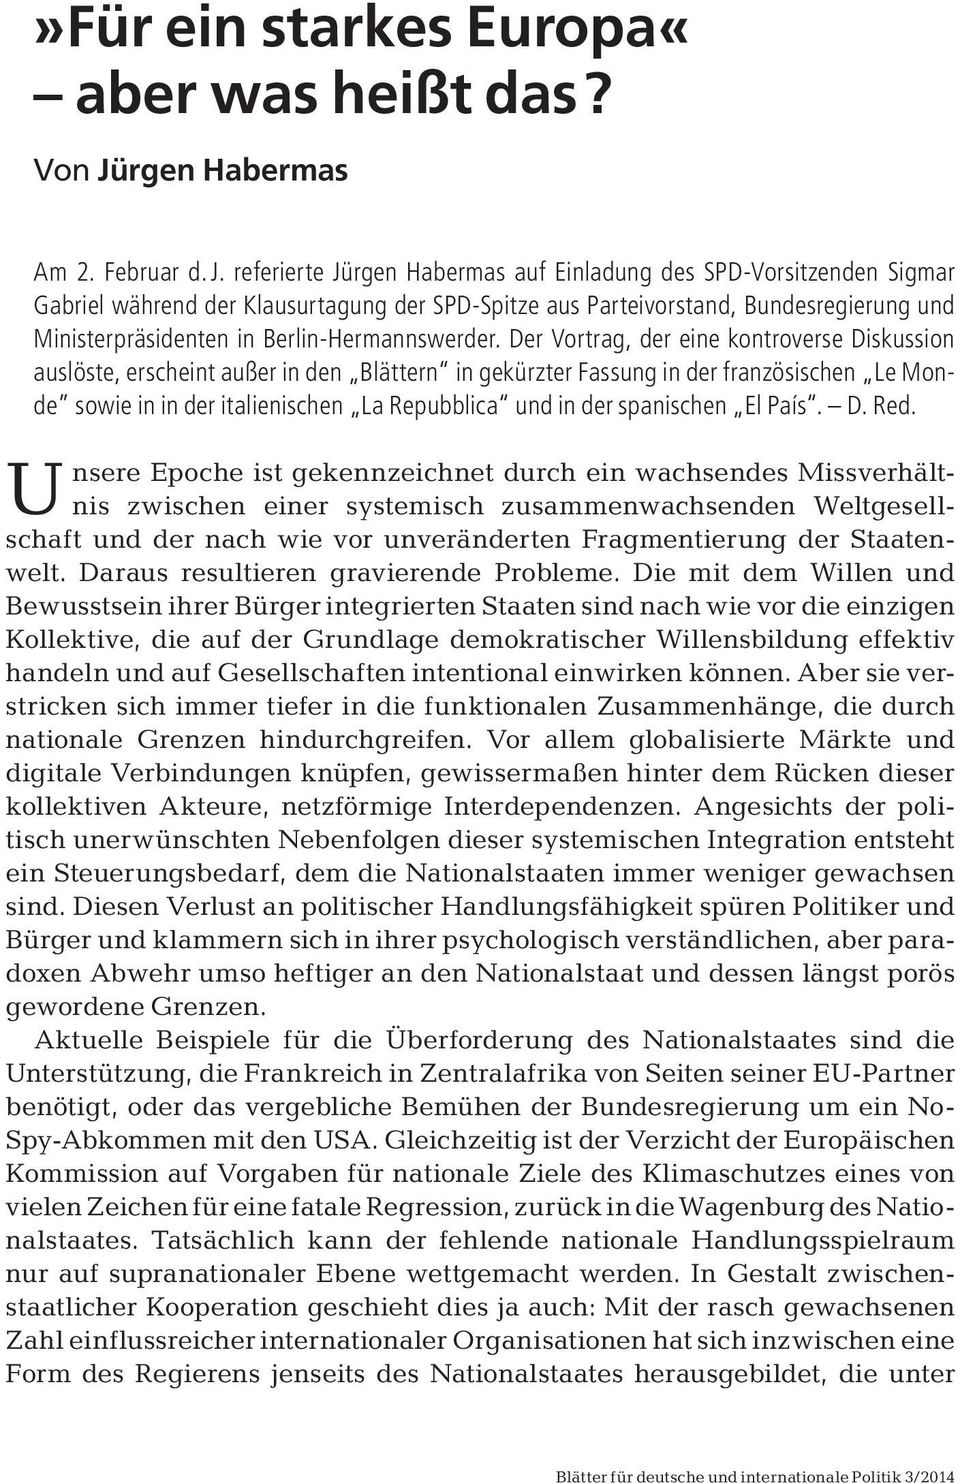 referierte Jürgen Habermas auf Einladung des SPD-Vorsitzenden Sigmar Gabriel während der Klausurtagung der SPD-Spitze aus Parteivorstand, Bundesregierung und Ministerpräsidenten in